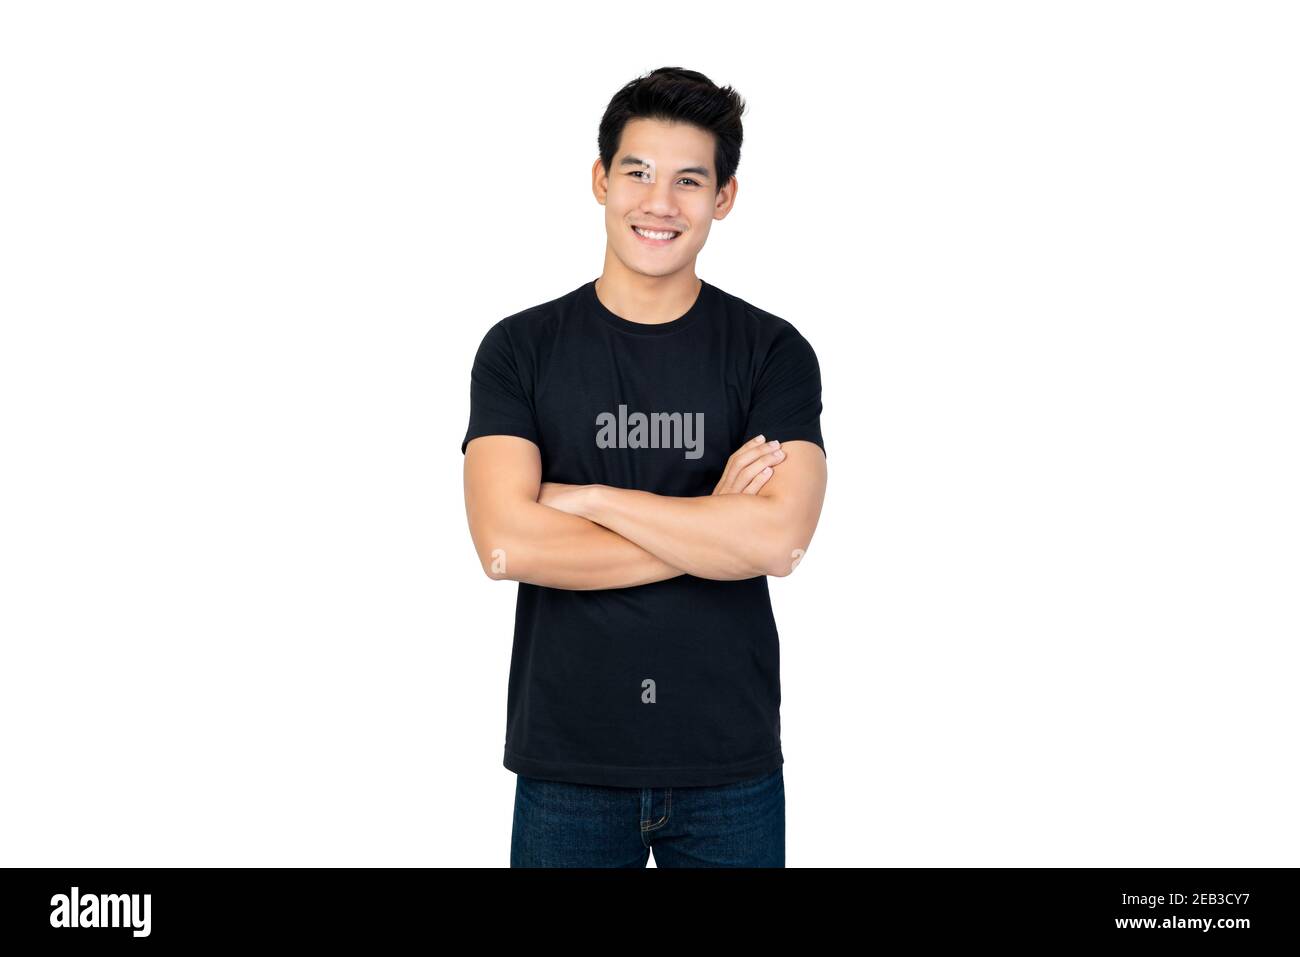 Lächelnd schöner asiatischer Mann im lässigen schwarzen T-Shirt mit Arm Gekreuzte Betrachtung des Fotostudios, isoliert auf weißem Hintergrund Stockfoto